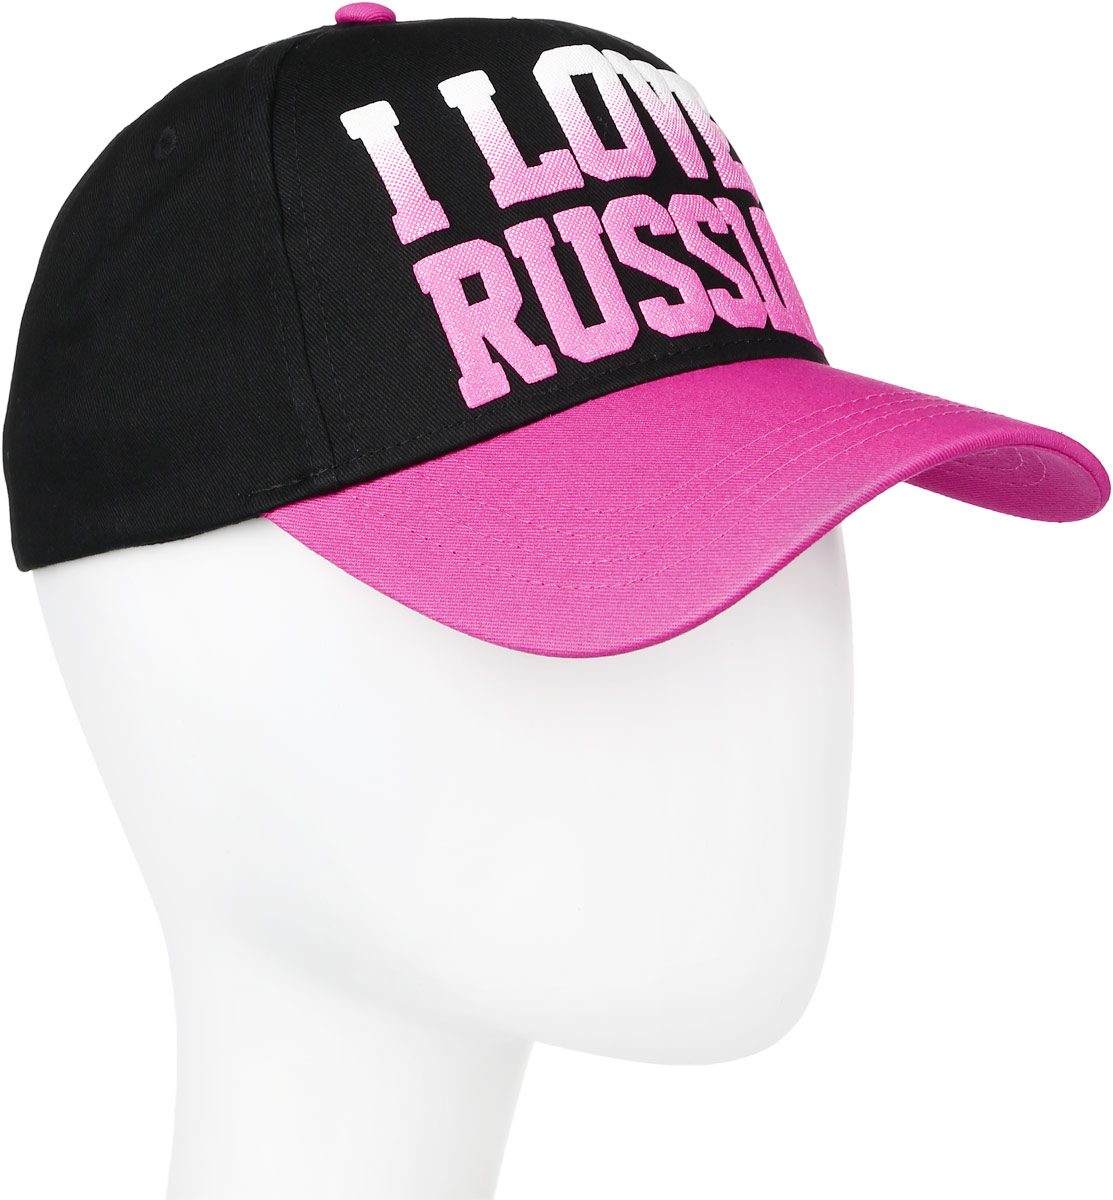 Бейсболка Robin Ruth, цвет: черный, розовый. CRUS112-B. Размер универсальный